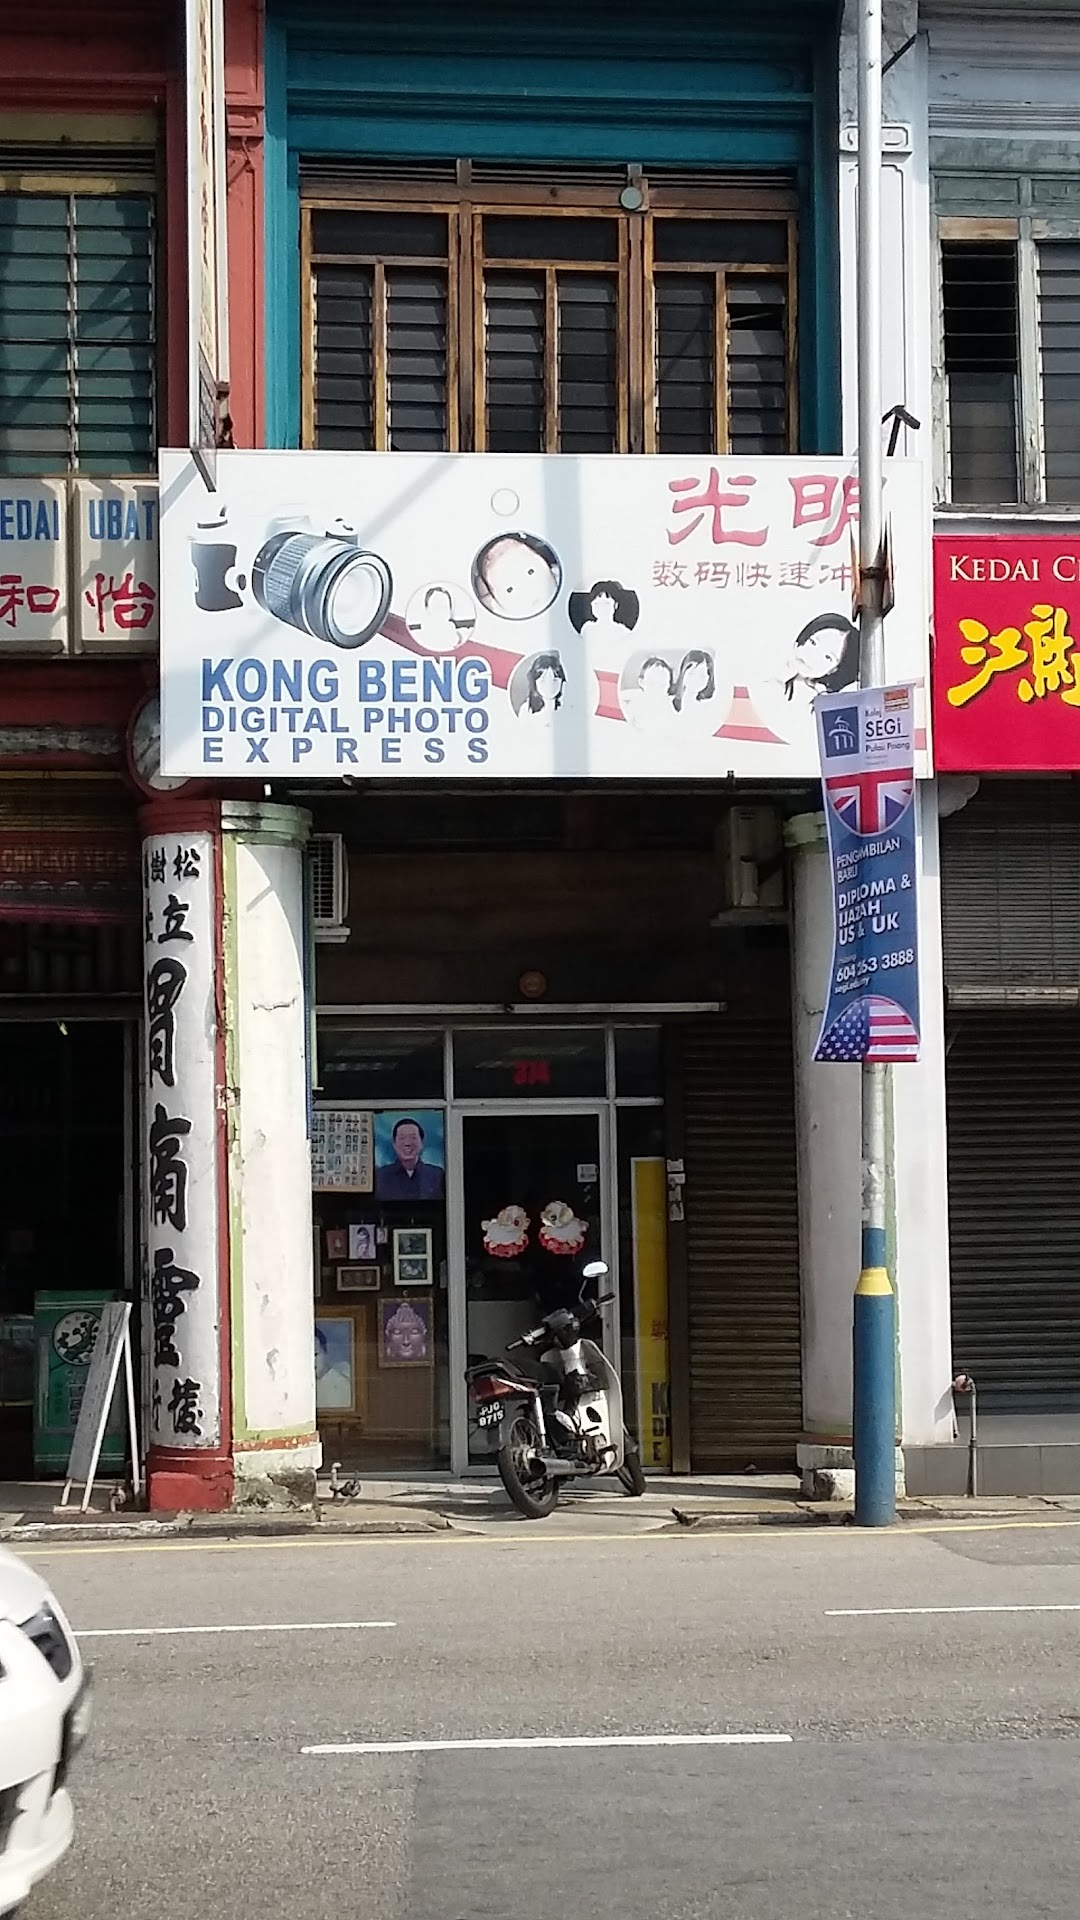 Kong Beng Digital Photo Express